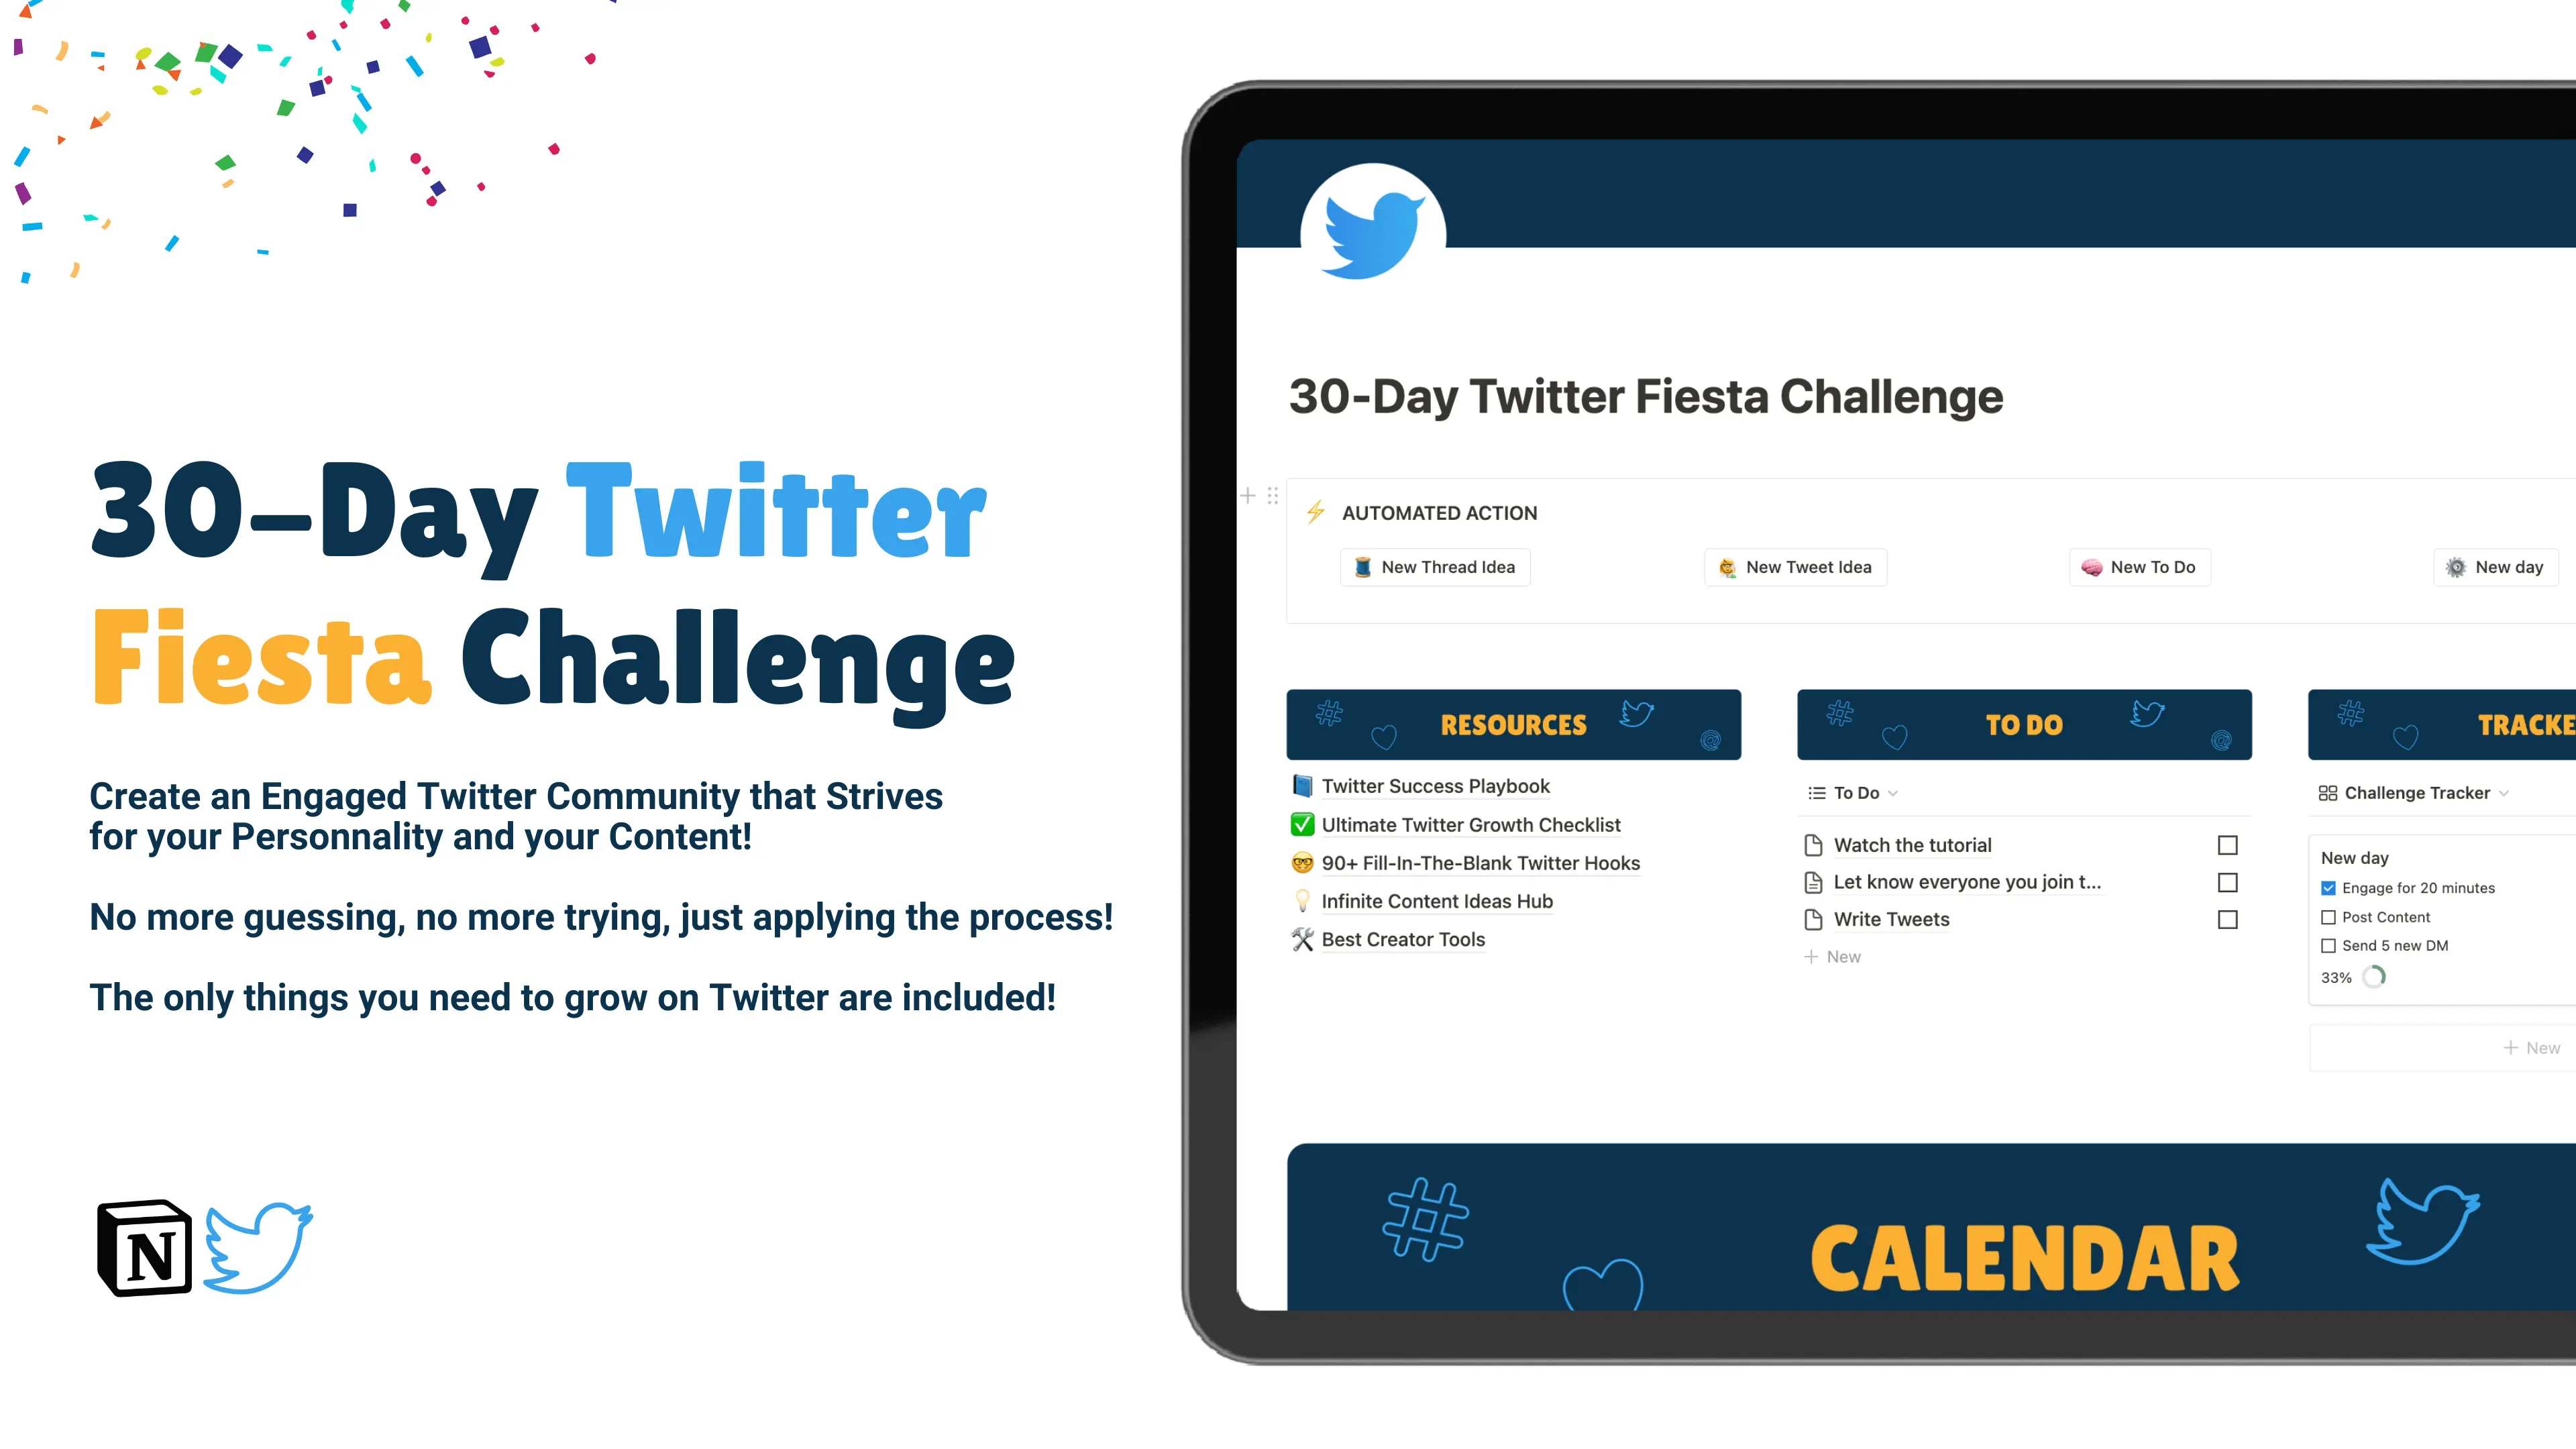 30 Day Twitter Fiesta Challenge image